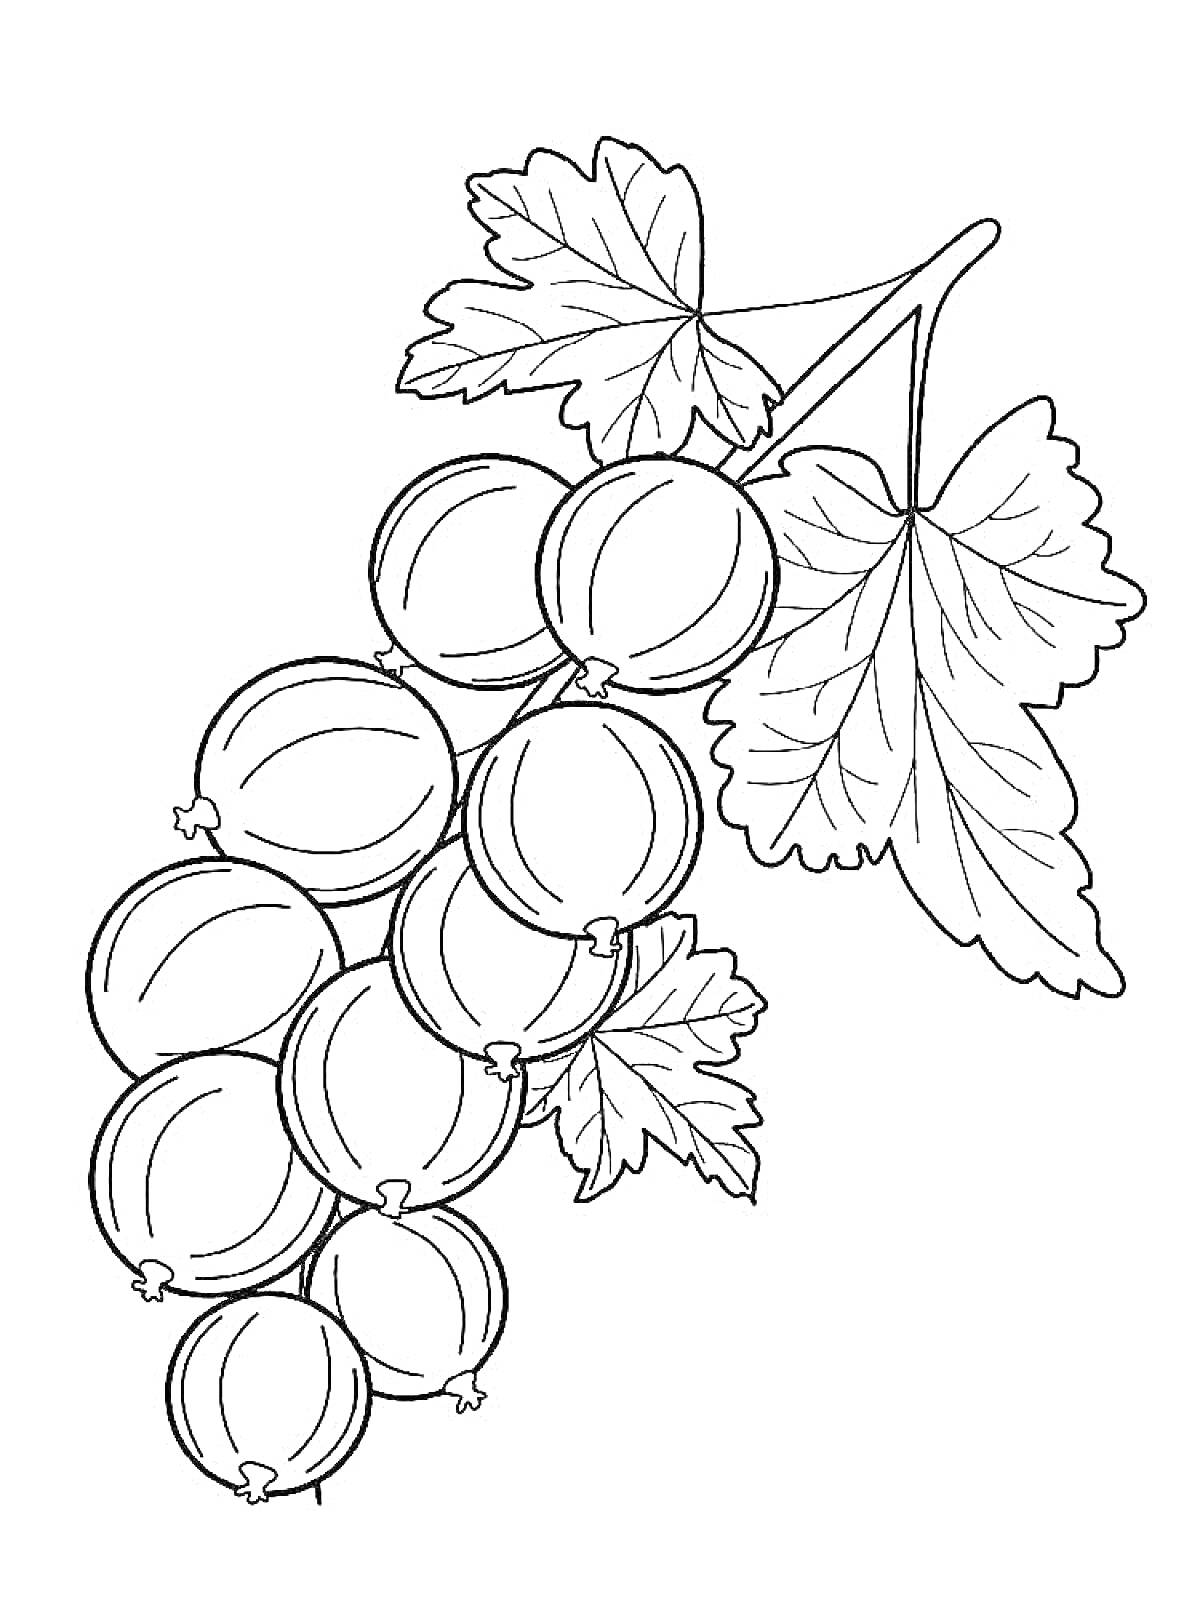 Ветка с плодами крыжовника и листьями